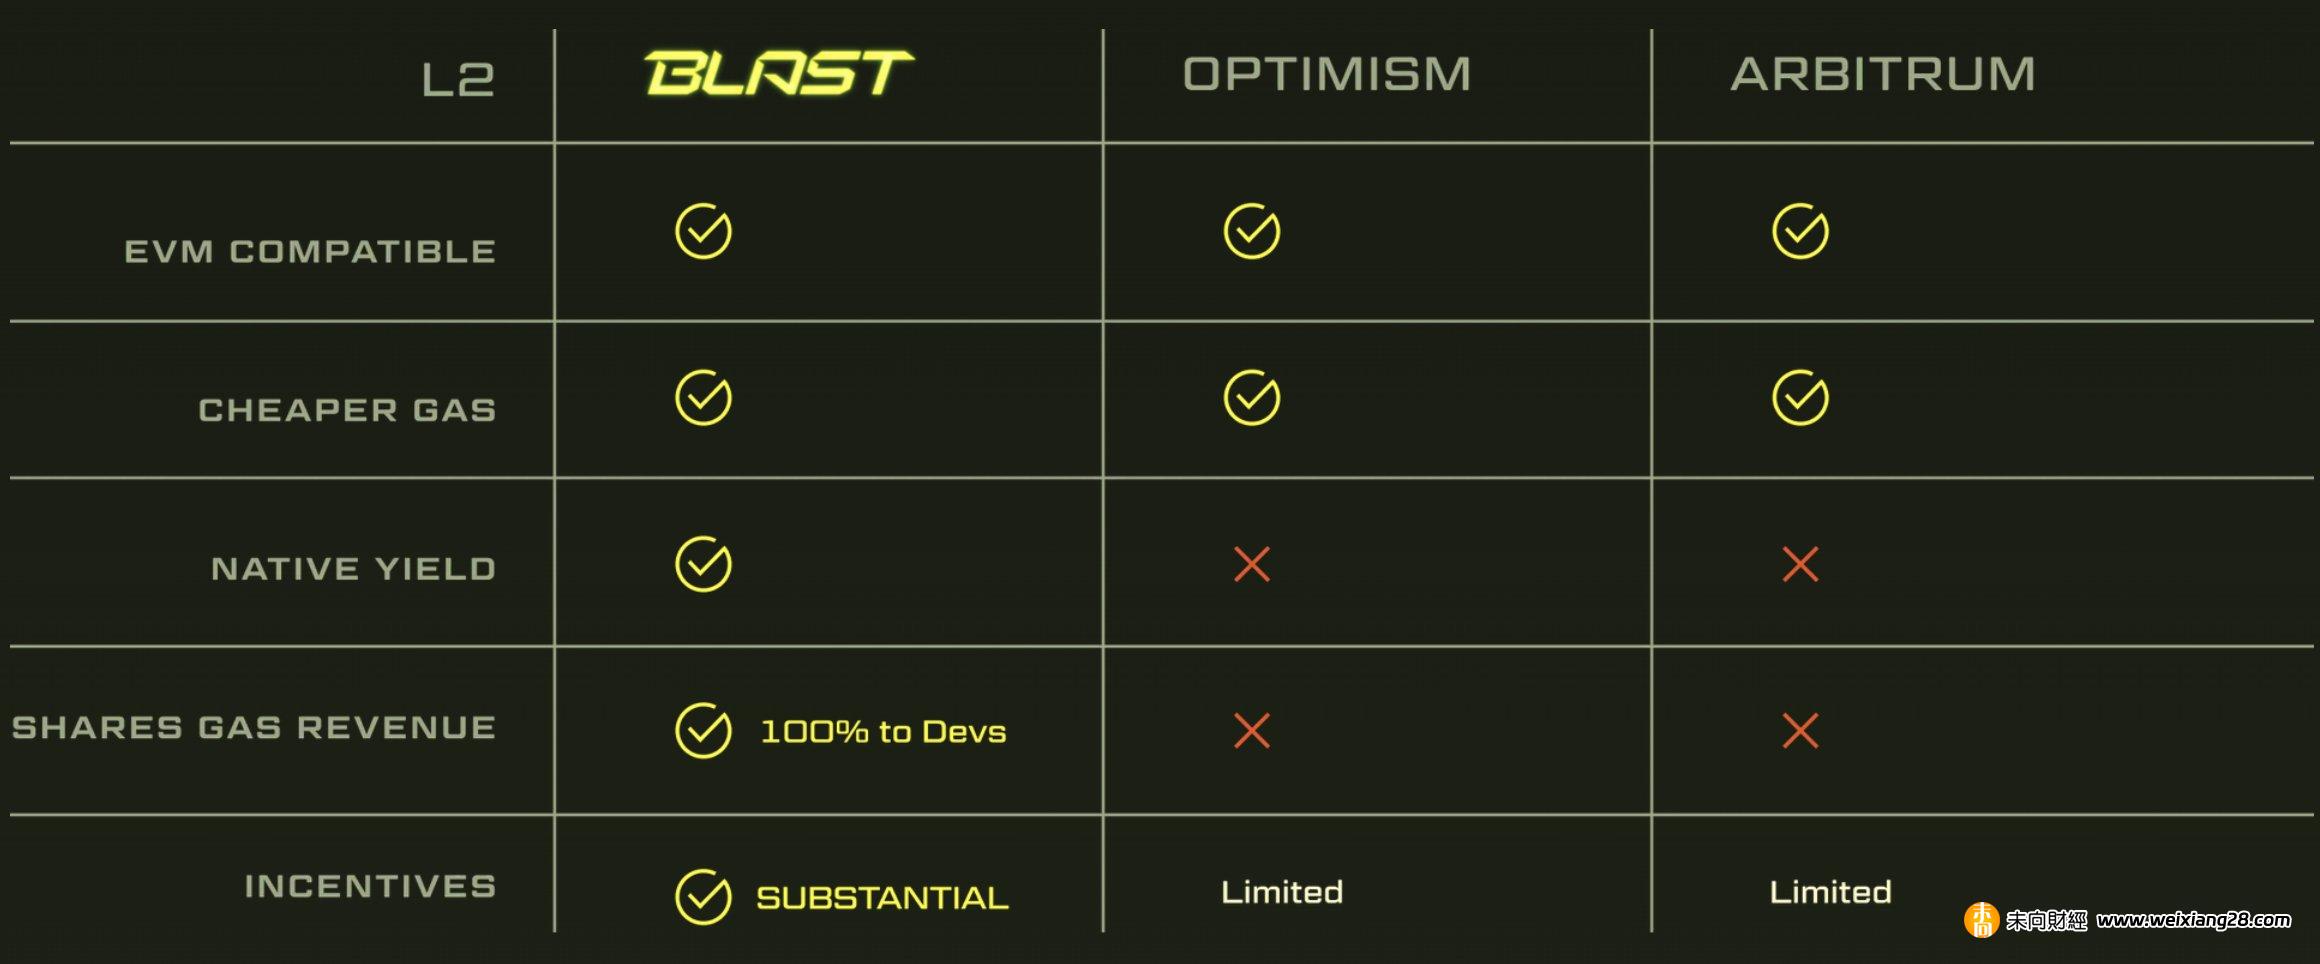 速覽Blur創辦人推出的生息型Layer2 Blast：復刻Blur積分空投玩法，明年1月測試線上線開啟活動插图